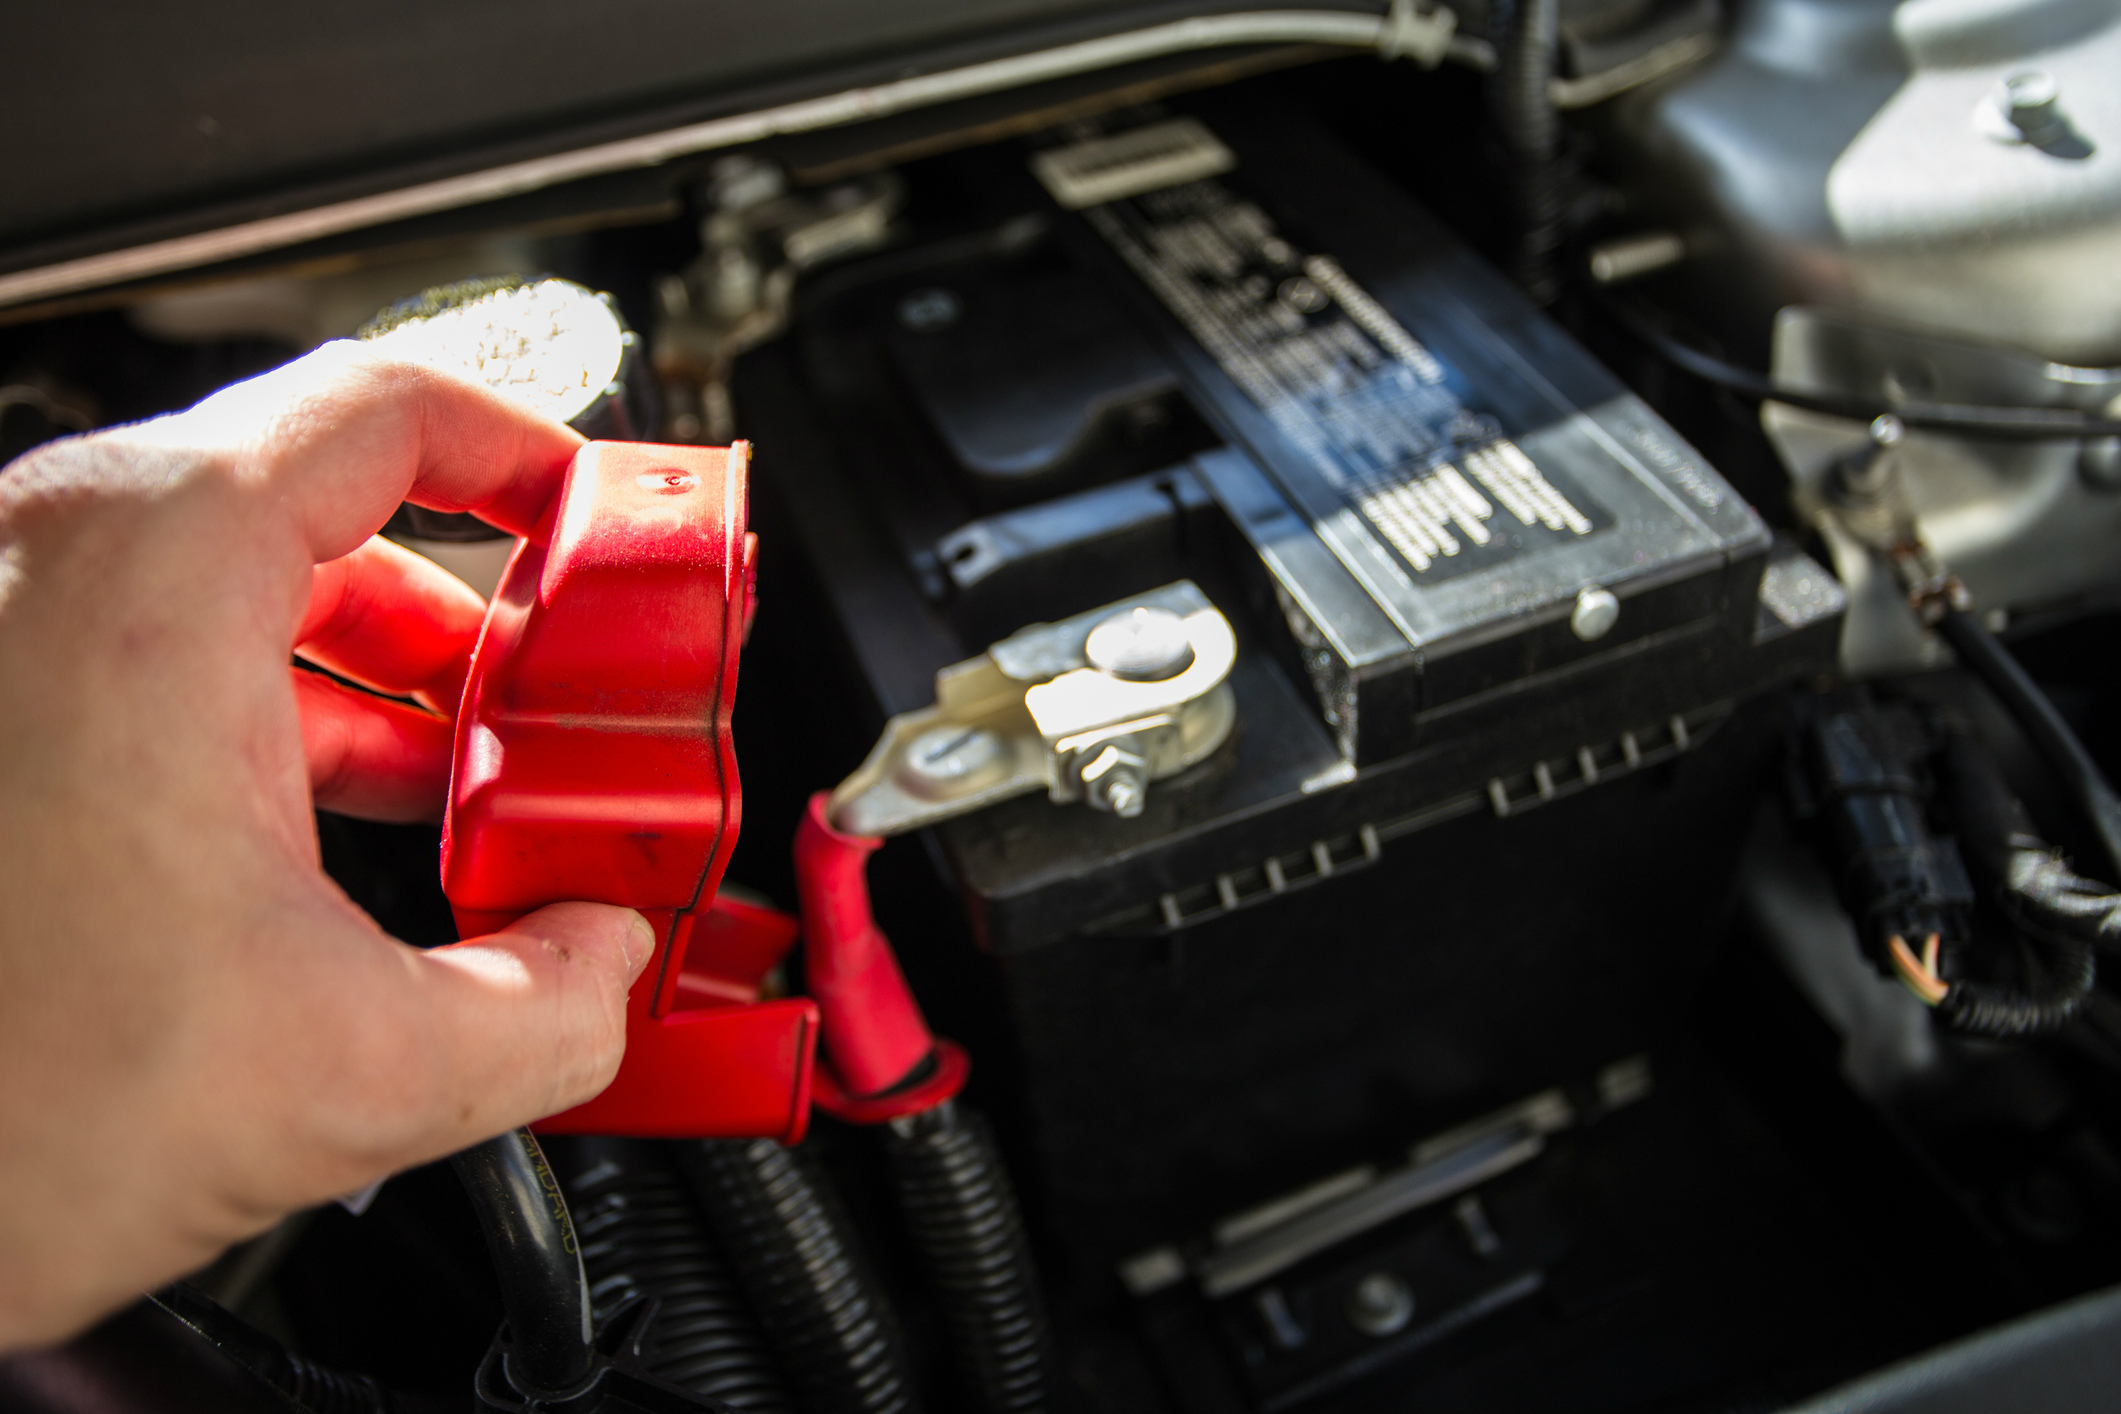 Как проверить новый аккумулятор автомобиля при покупке: Как проверить аккумулятор при покупке в магазине